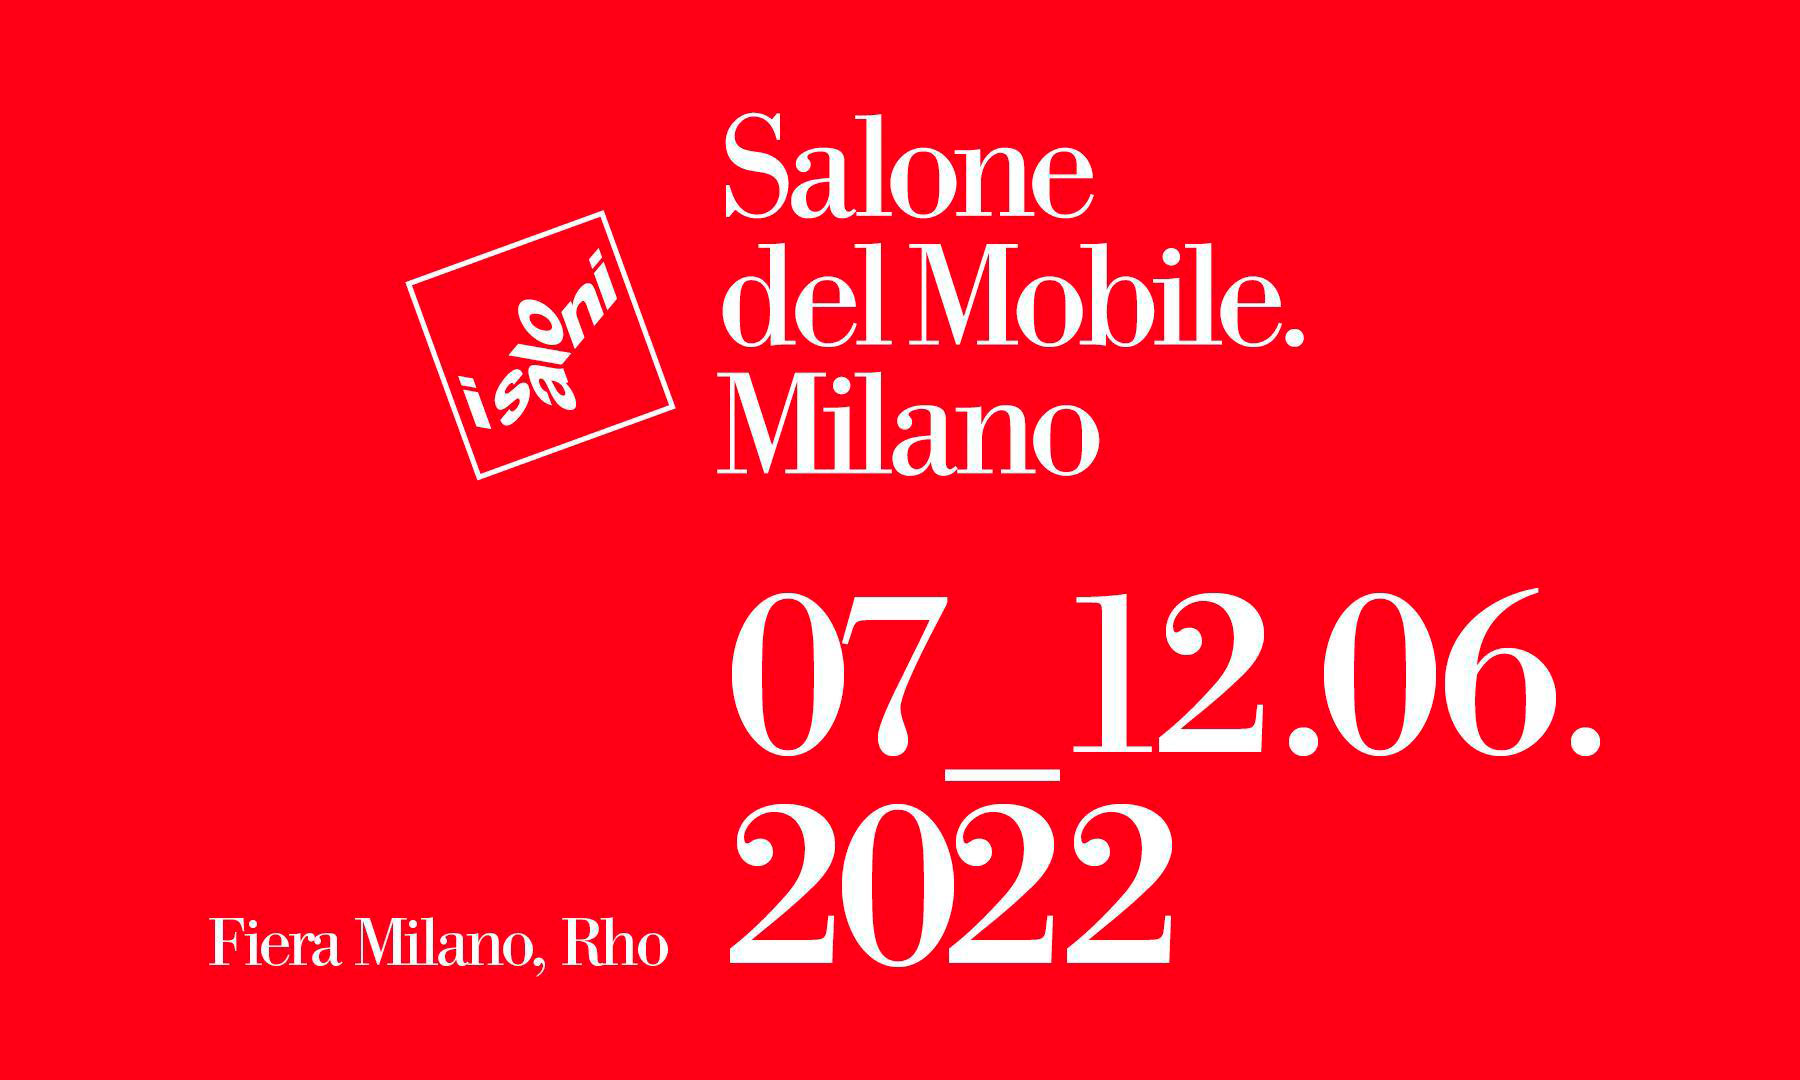 Salone del Mobile 2022